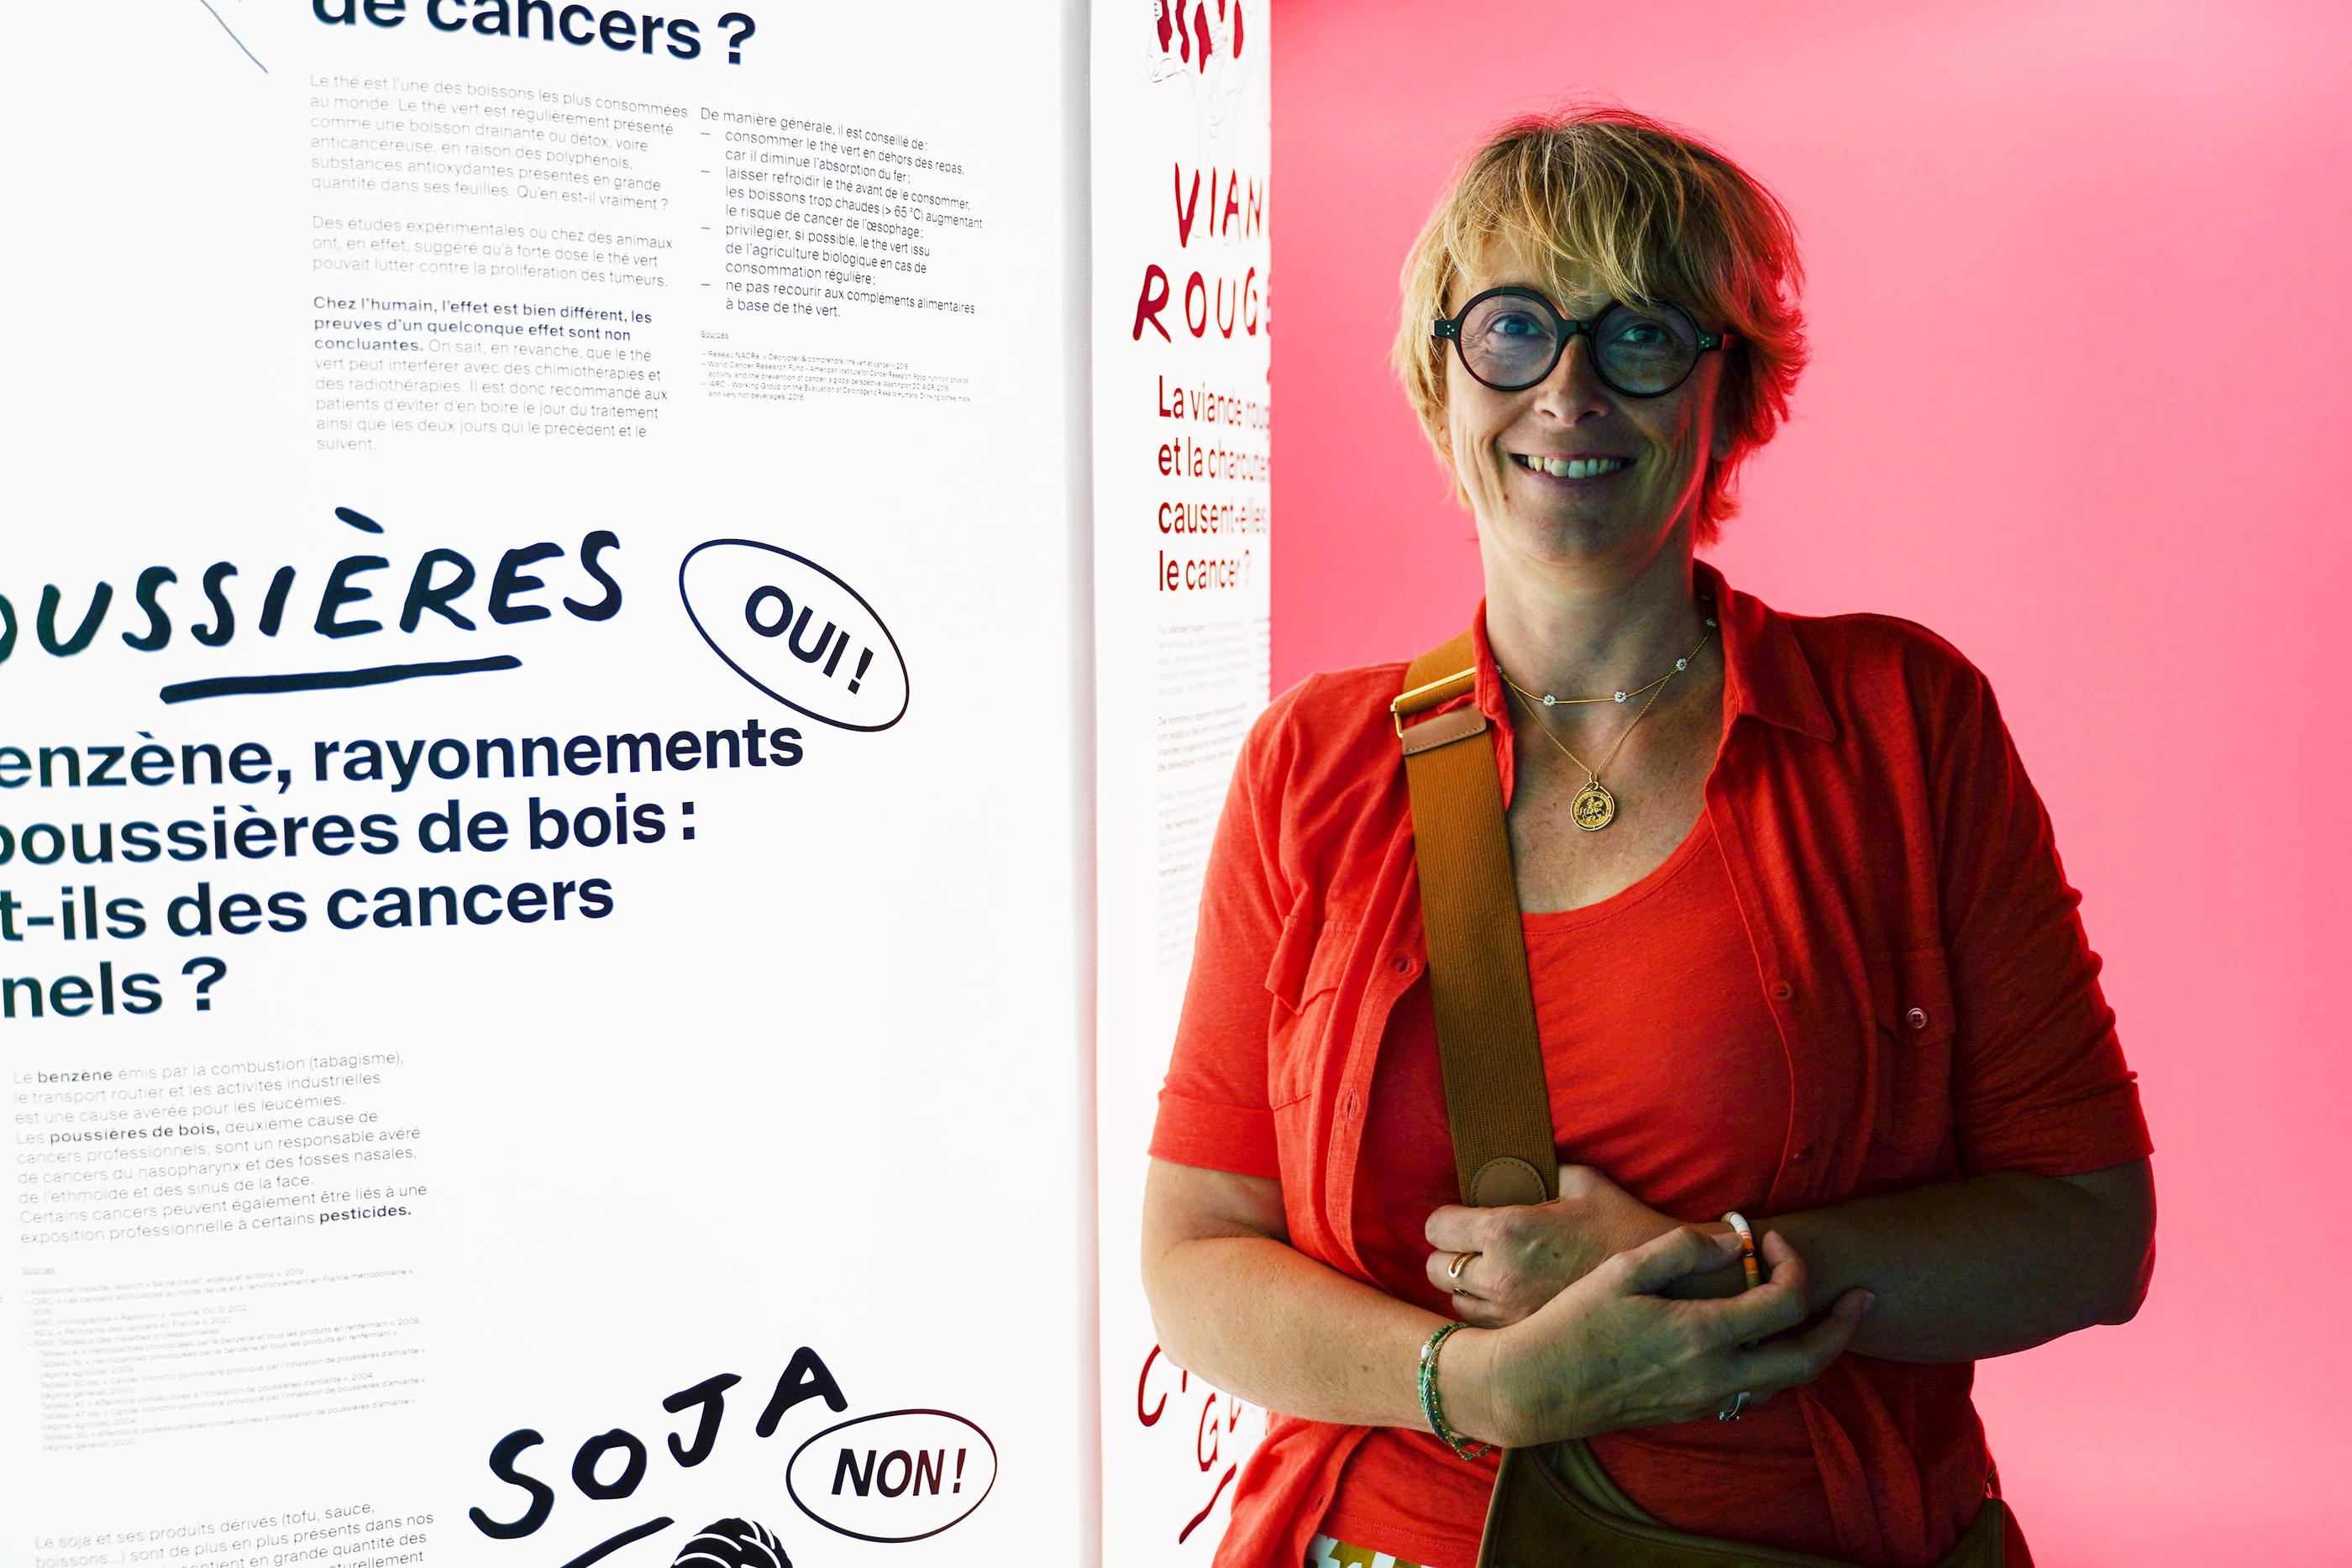 Cancer du sein : la campagne choc des Argentins - Le Parisien